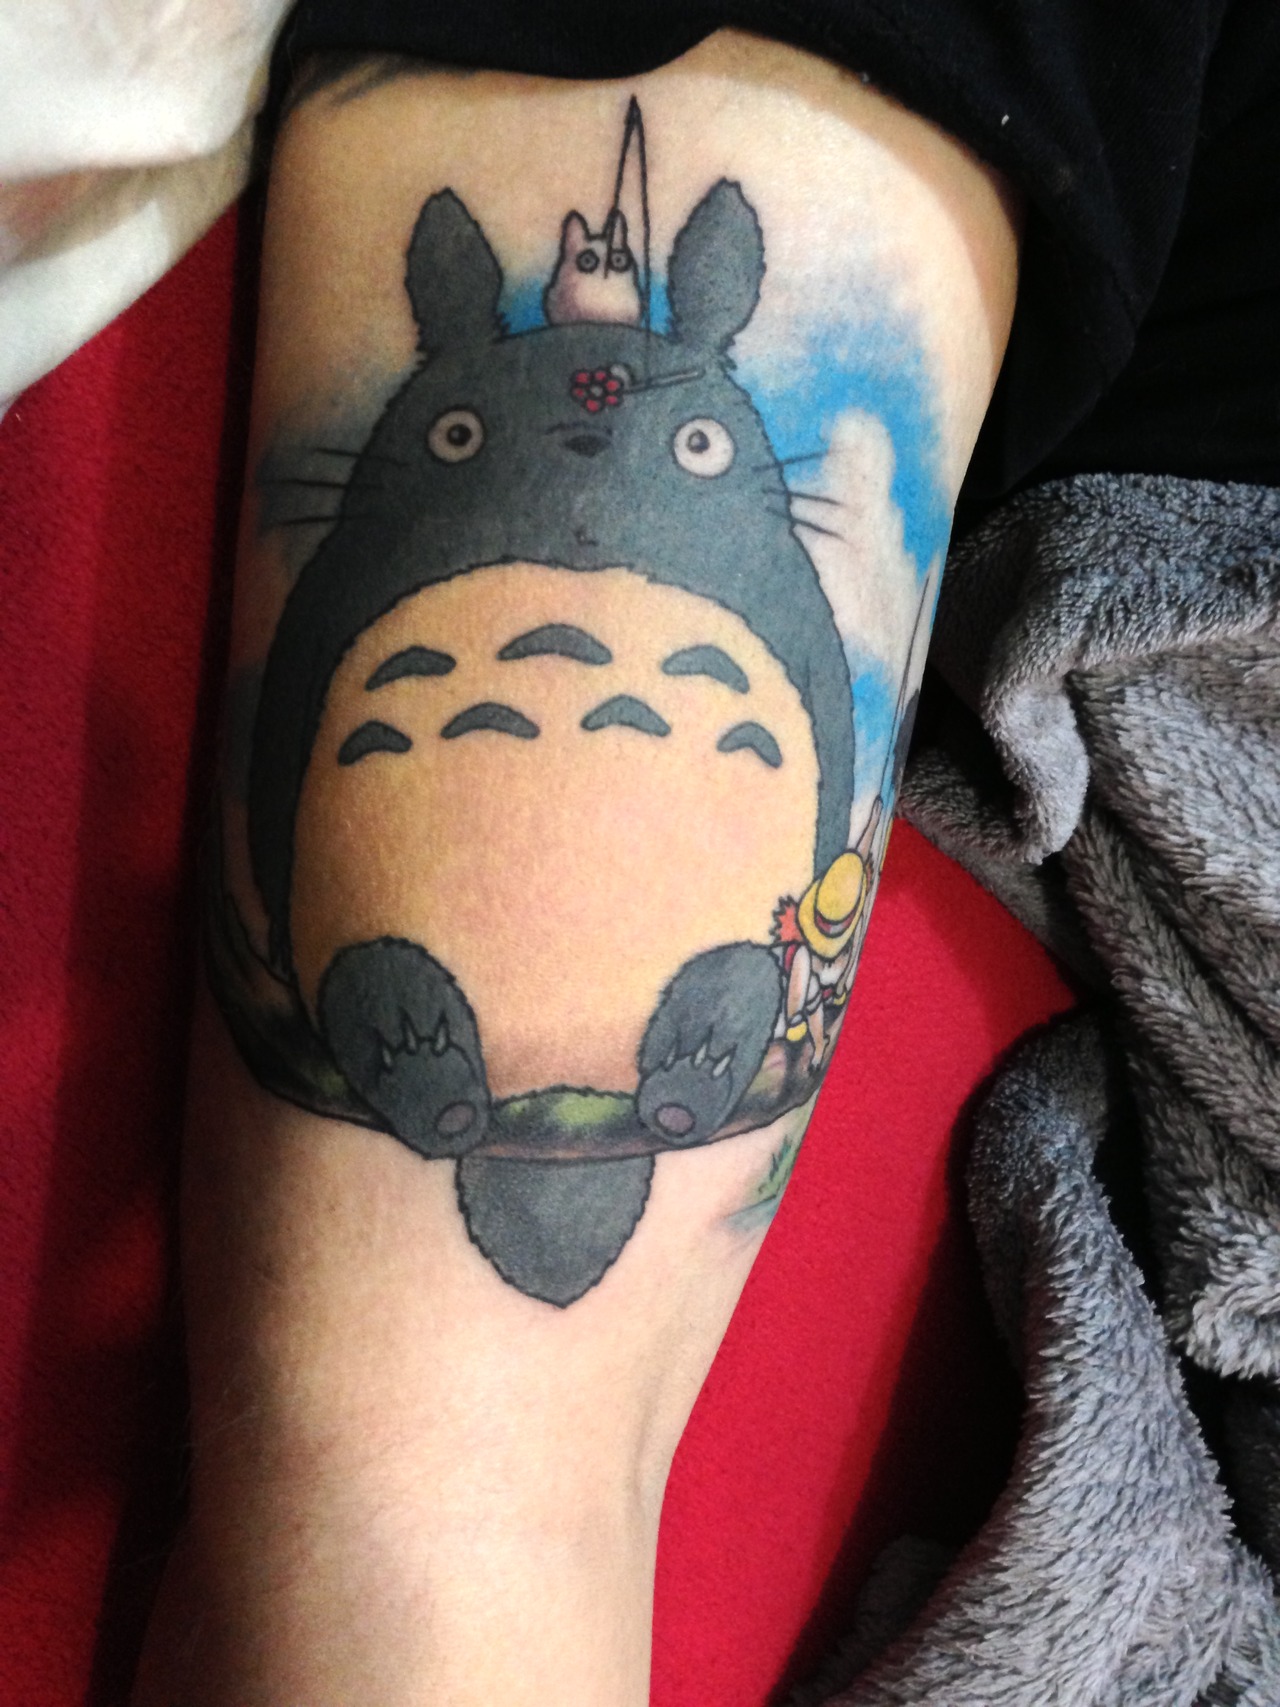 Totoro tattoo